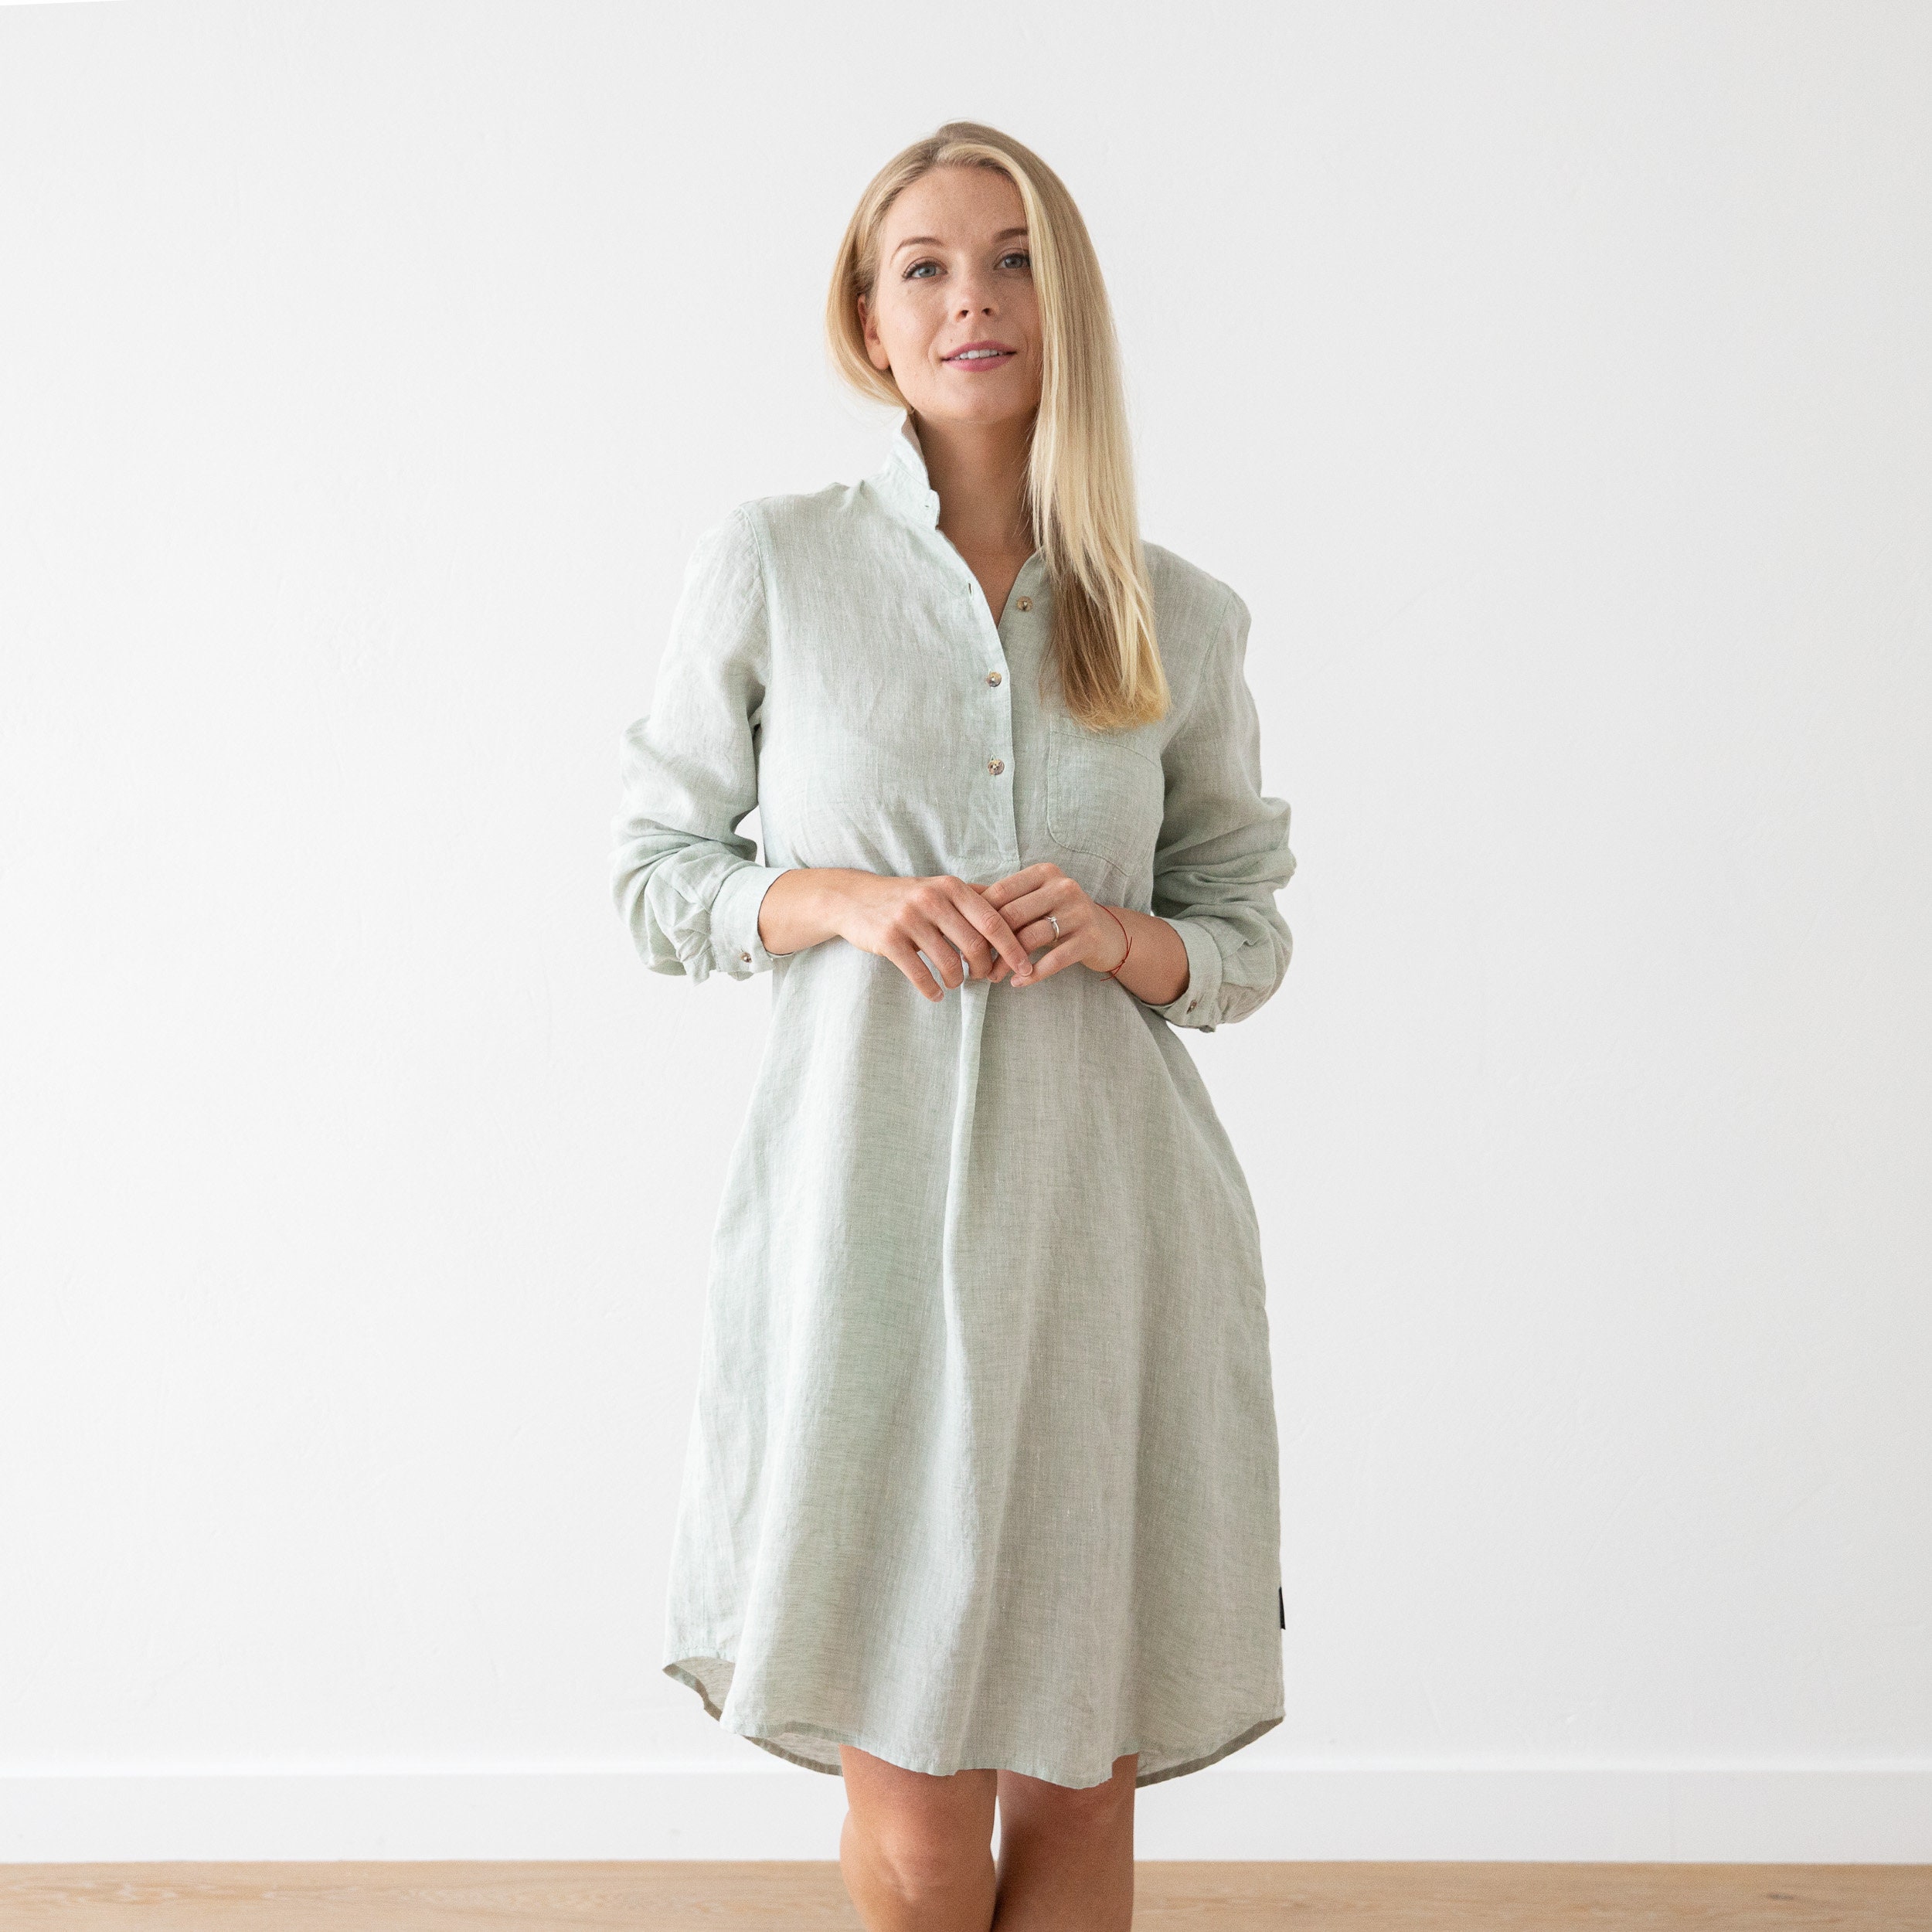 Linen Shirt Dress in Melange. Linen clothing for women in | Etsy